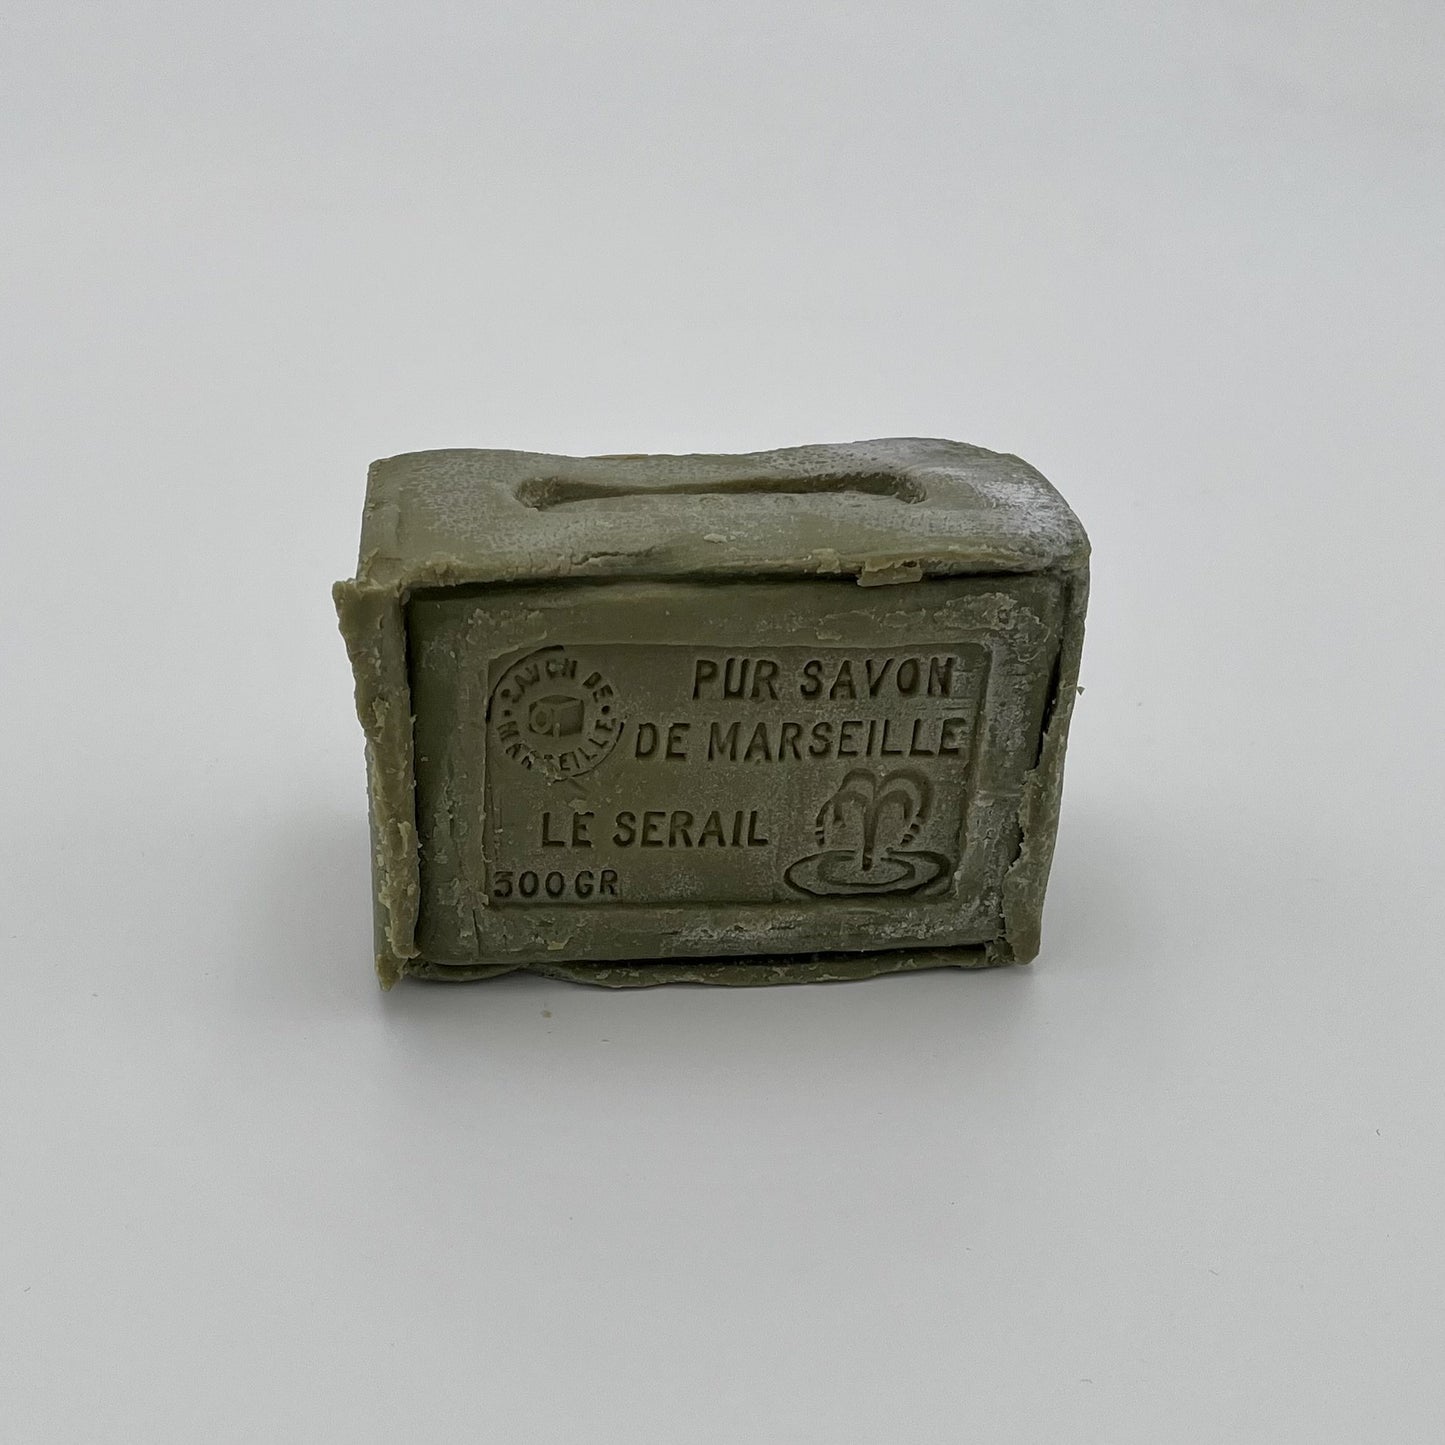 Le Serial Savon de Marseille olive oil soap 300g